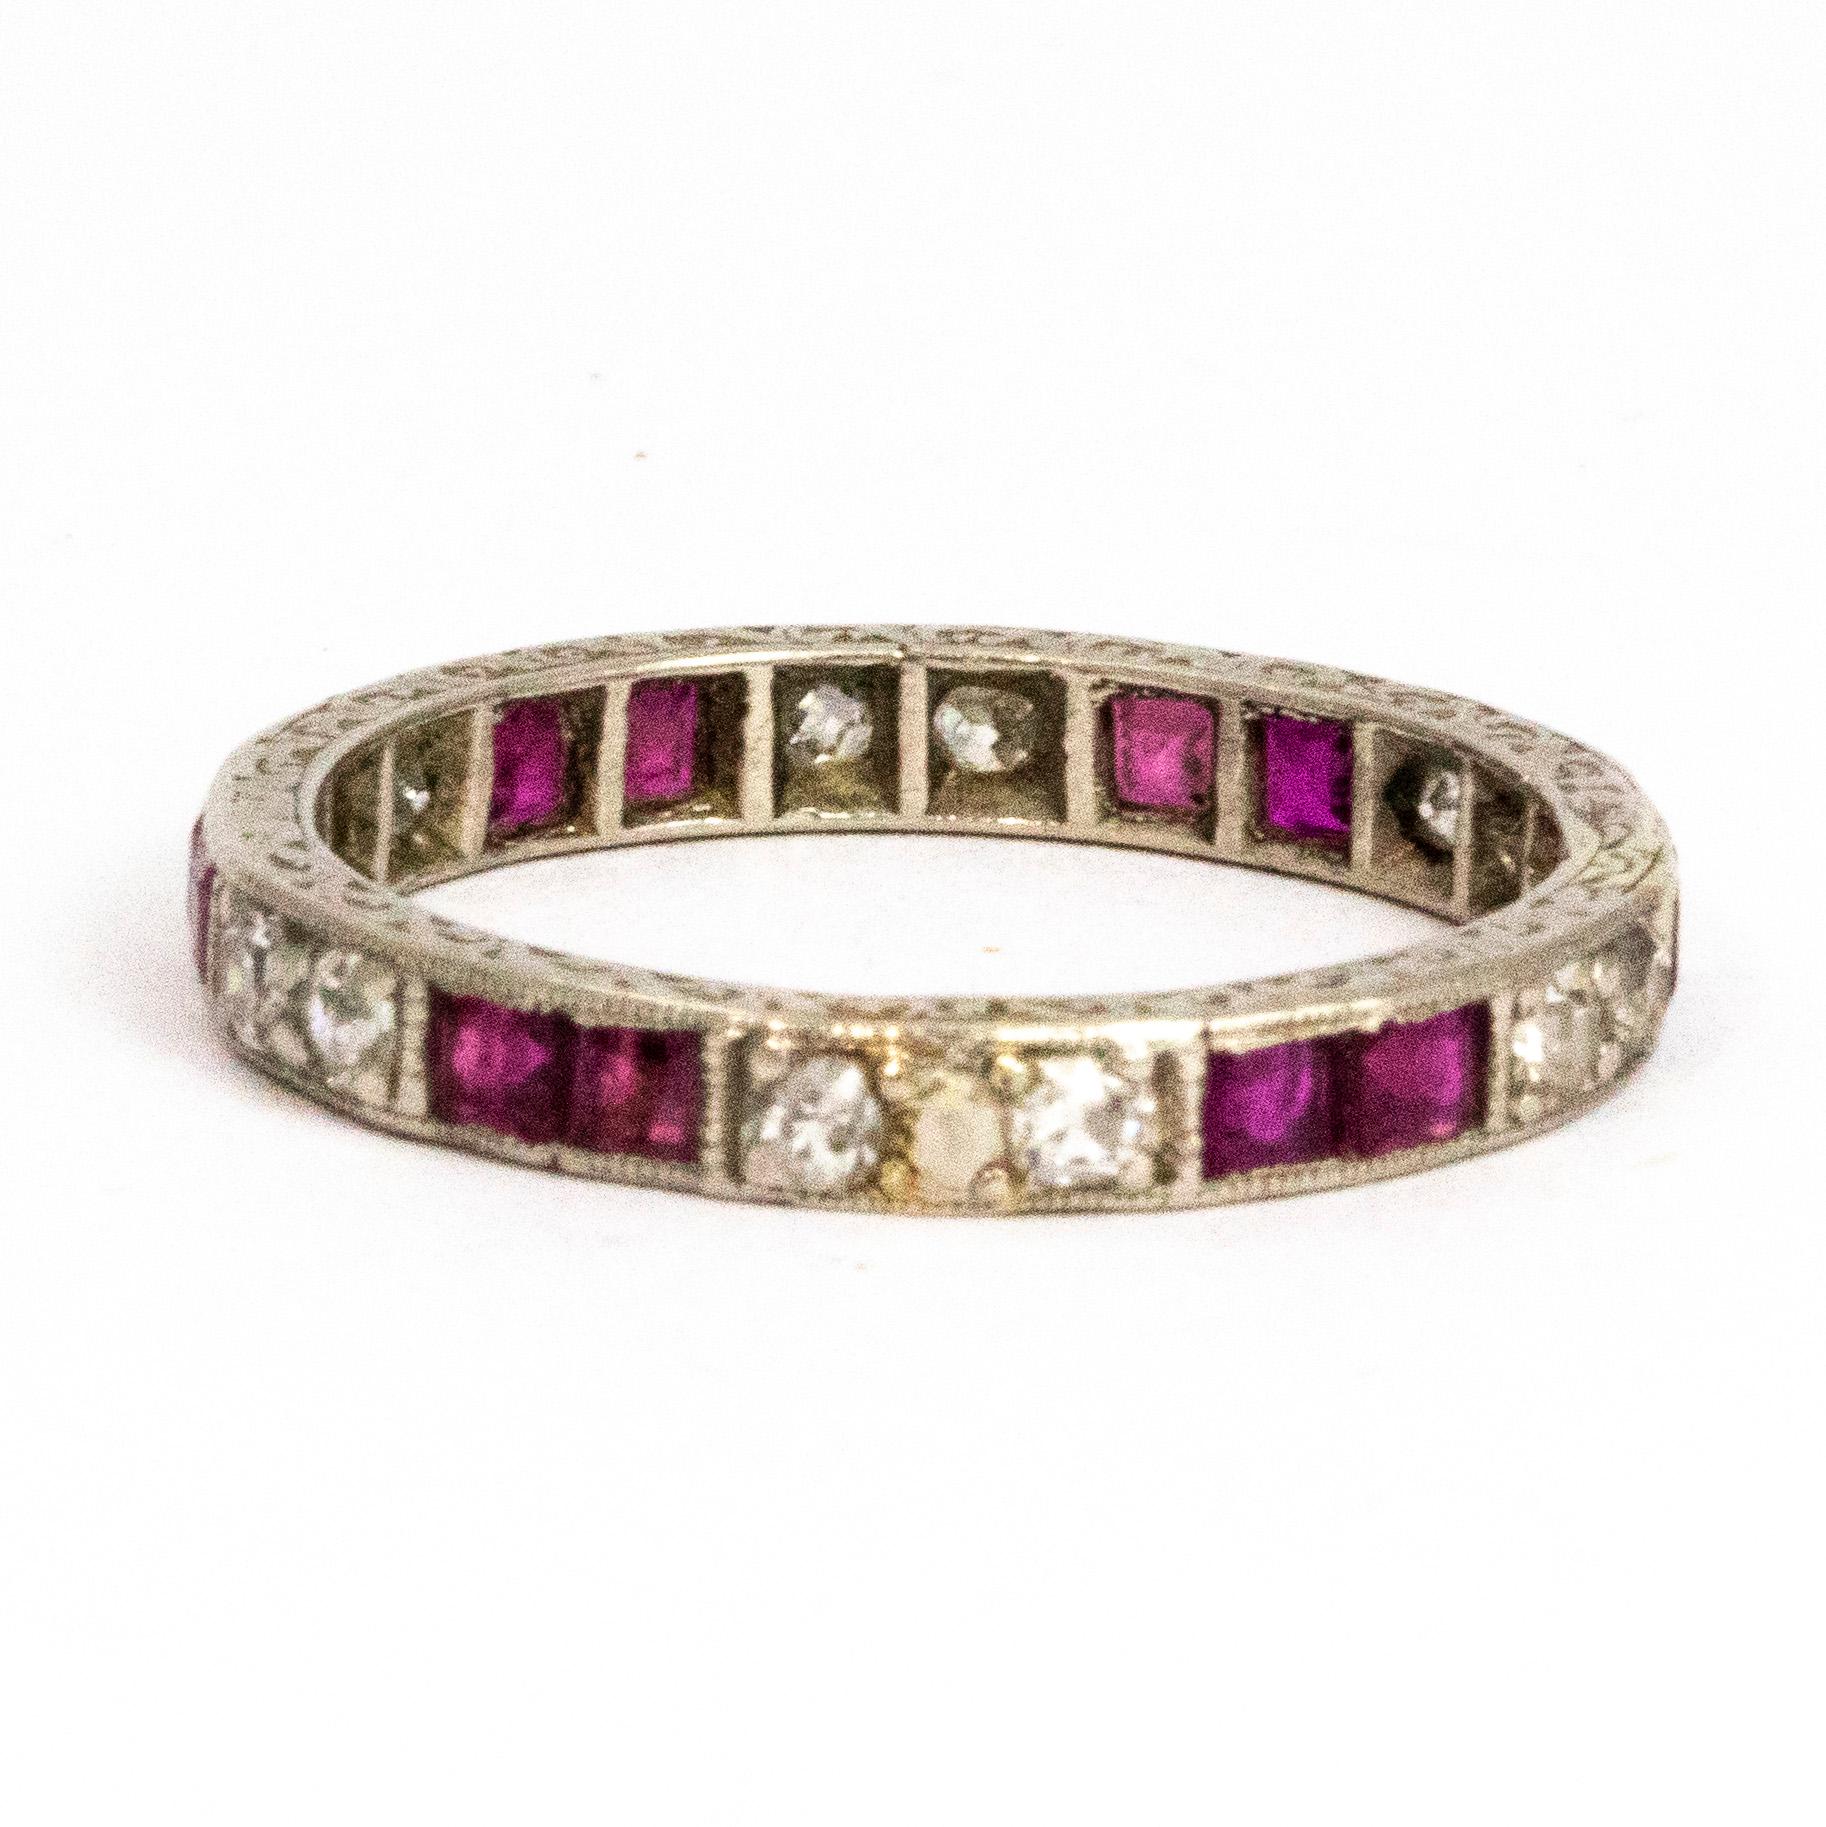 Dieser wunderbare Rubin und Diamant im Art-Deco-Stil Ewigkeit rühmt sich insgesamt 12 10pt Rubinen und 13 7pt Diamanten. Das Funkeln ist wunderschön und die Diamanten neben den Rubinen lassen die Steine hervorstechen. Die Steine sind alle in Platin